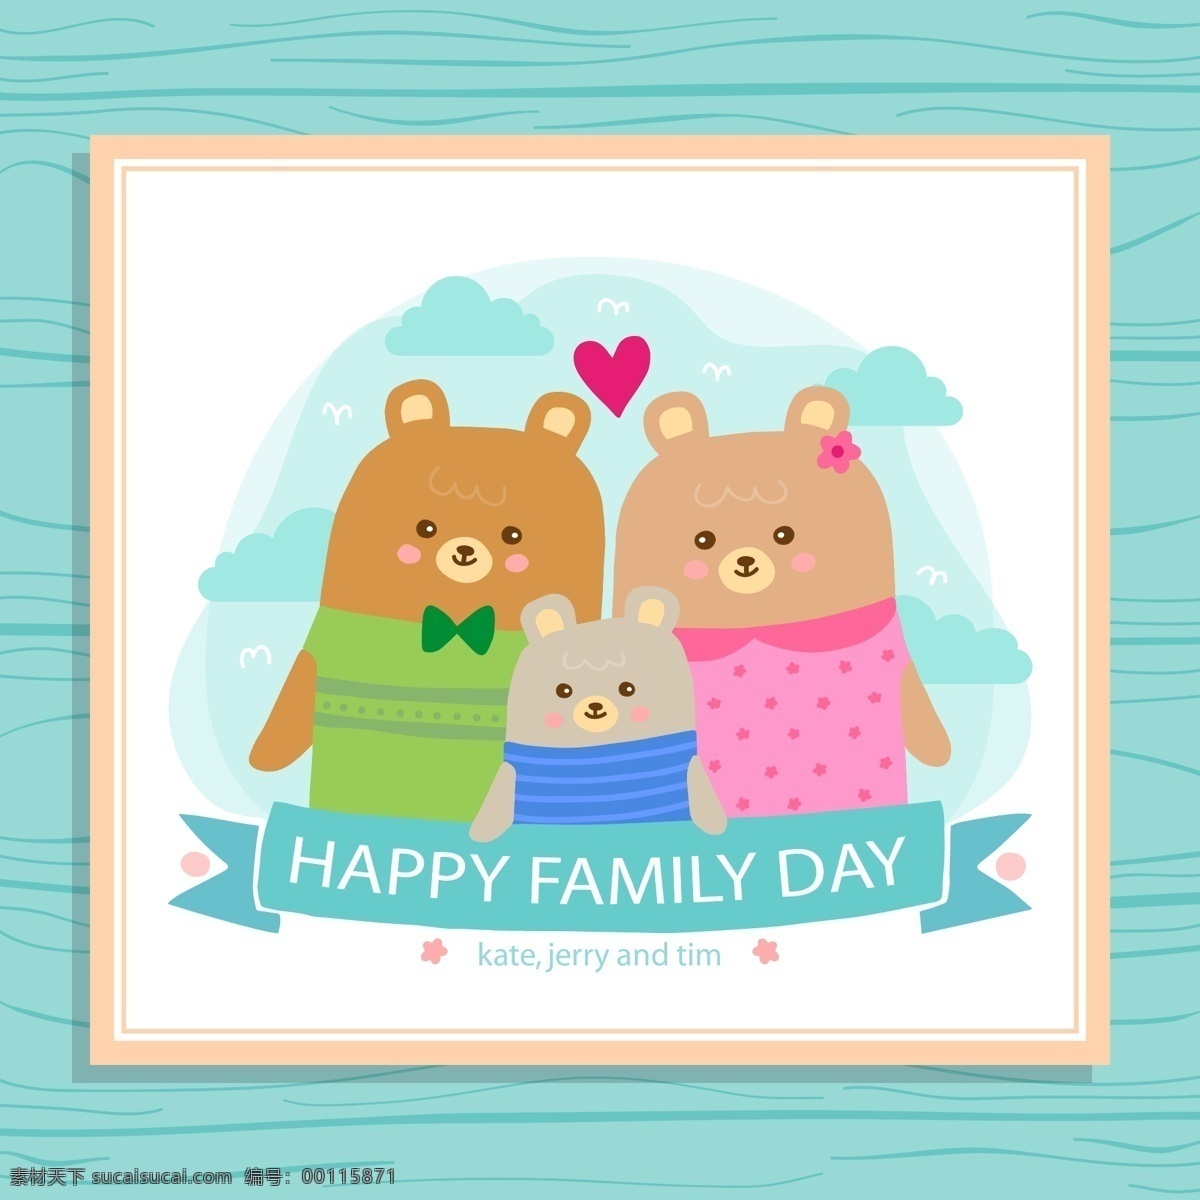 可爱 熊 家庭 节日 贺卡 矢量 爱心 条幅 丝带 家庭日 happy family day 云朵 名片卡片